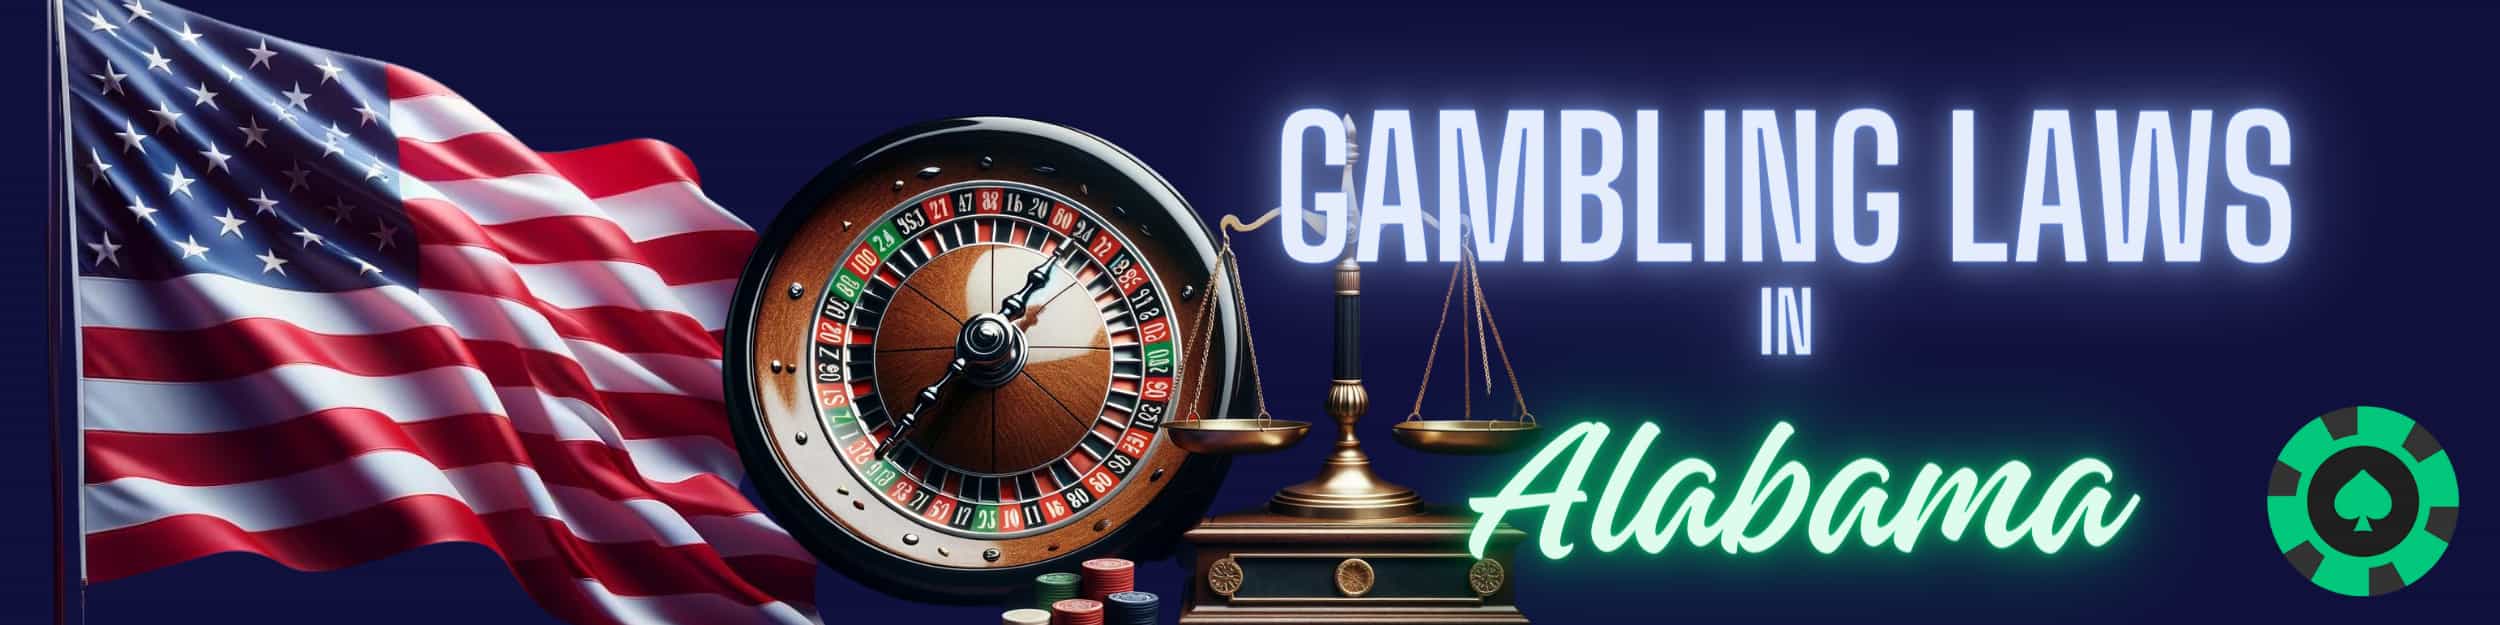 Gambling Laws in Alabama